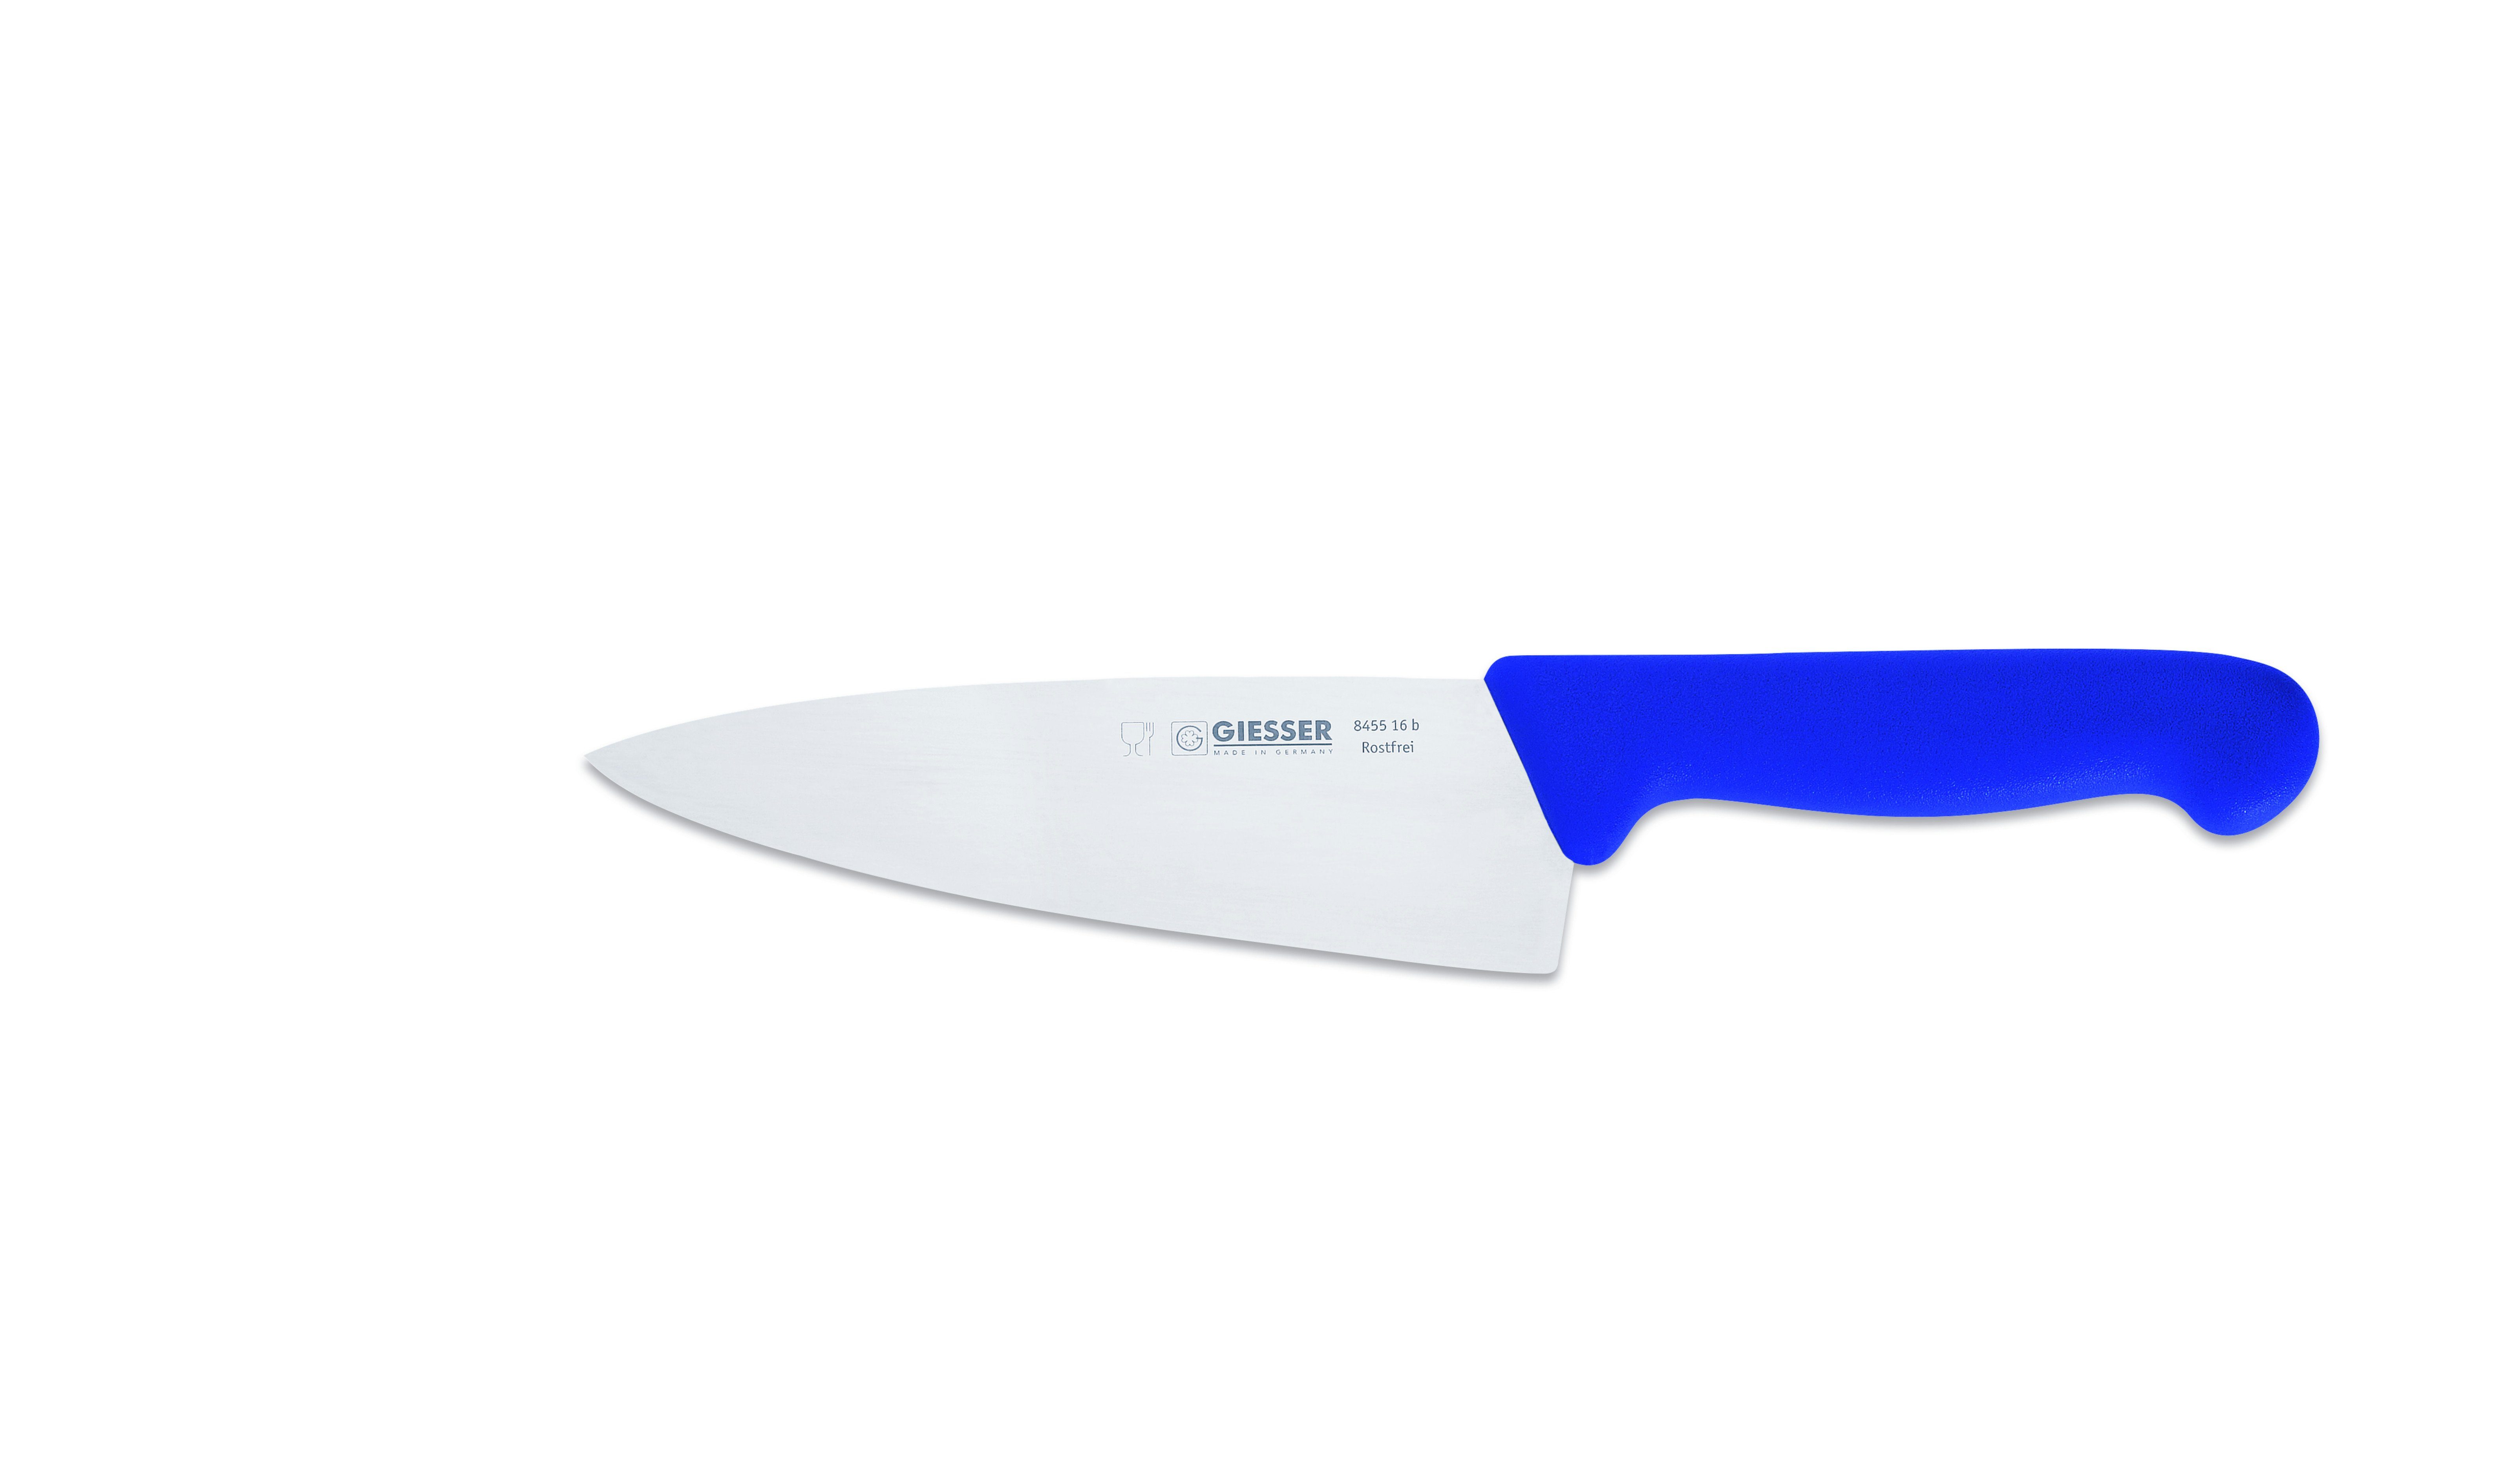 Handabzug, breit breite Rostfrei, jede blau Ideal Kochmesser Messer scharf, Form, Küche Giesser Küchenmesser 8455, für